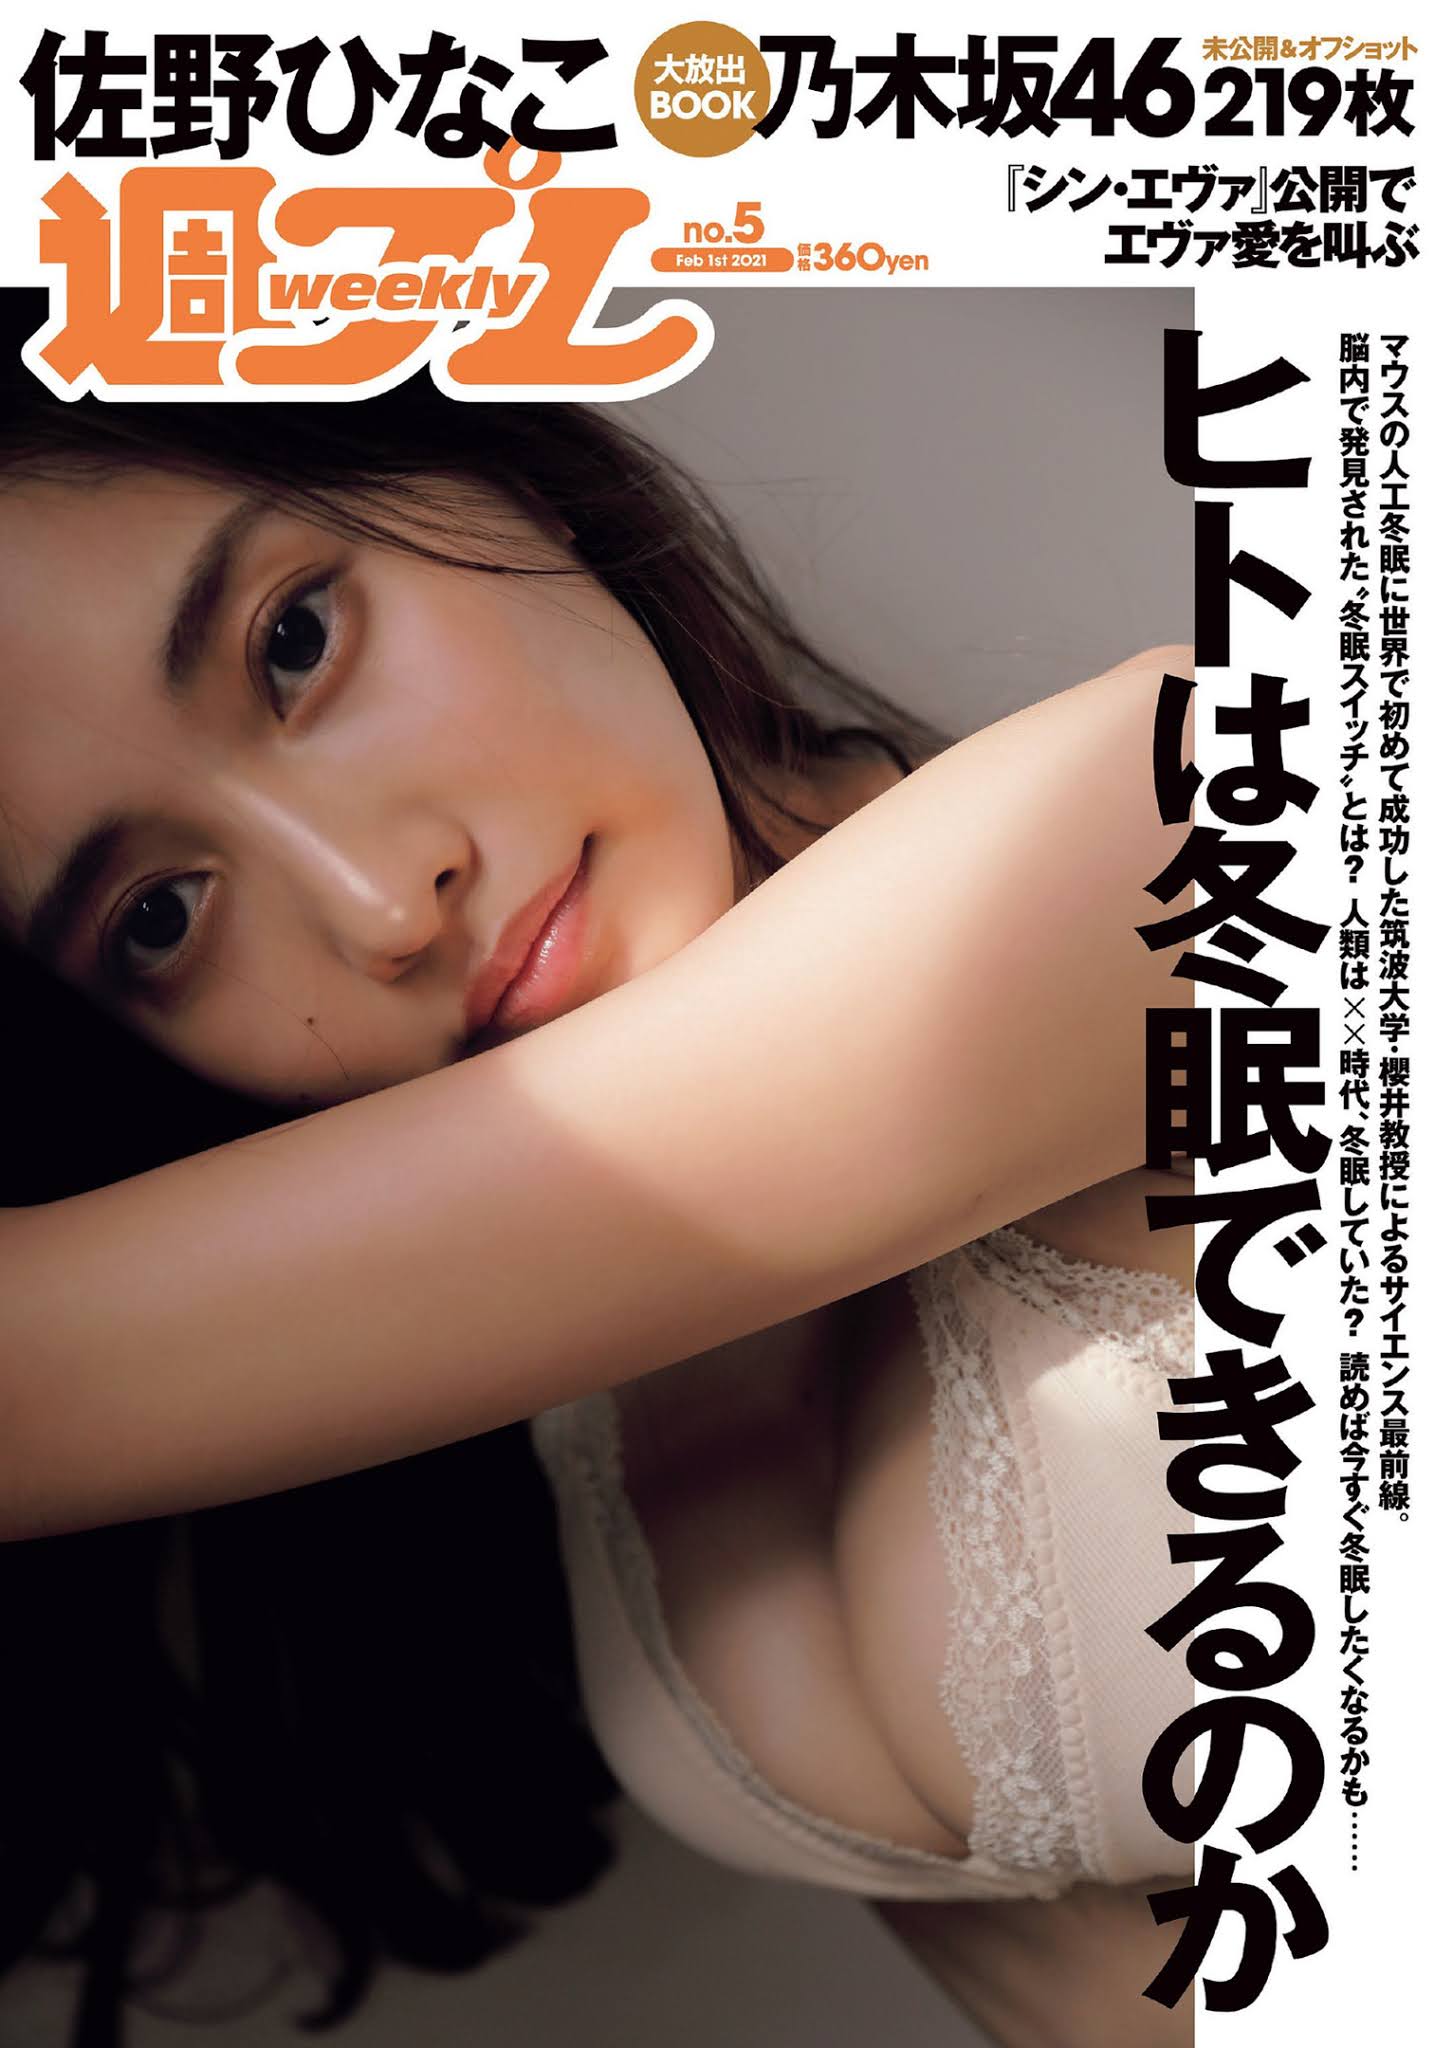 Hinako Sano 佐野ひなこ, Weekly Playboy 2021 No.05 (週刊プレイボーイ 2021年5号)